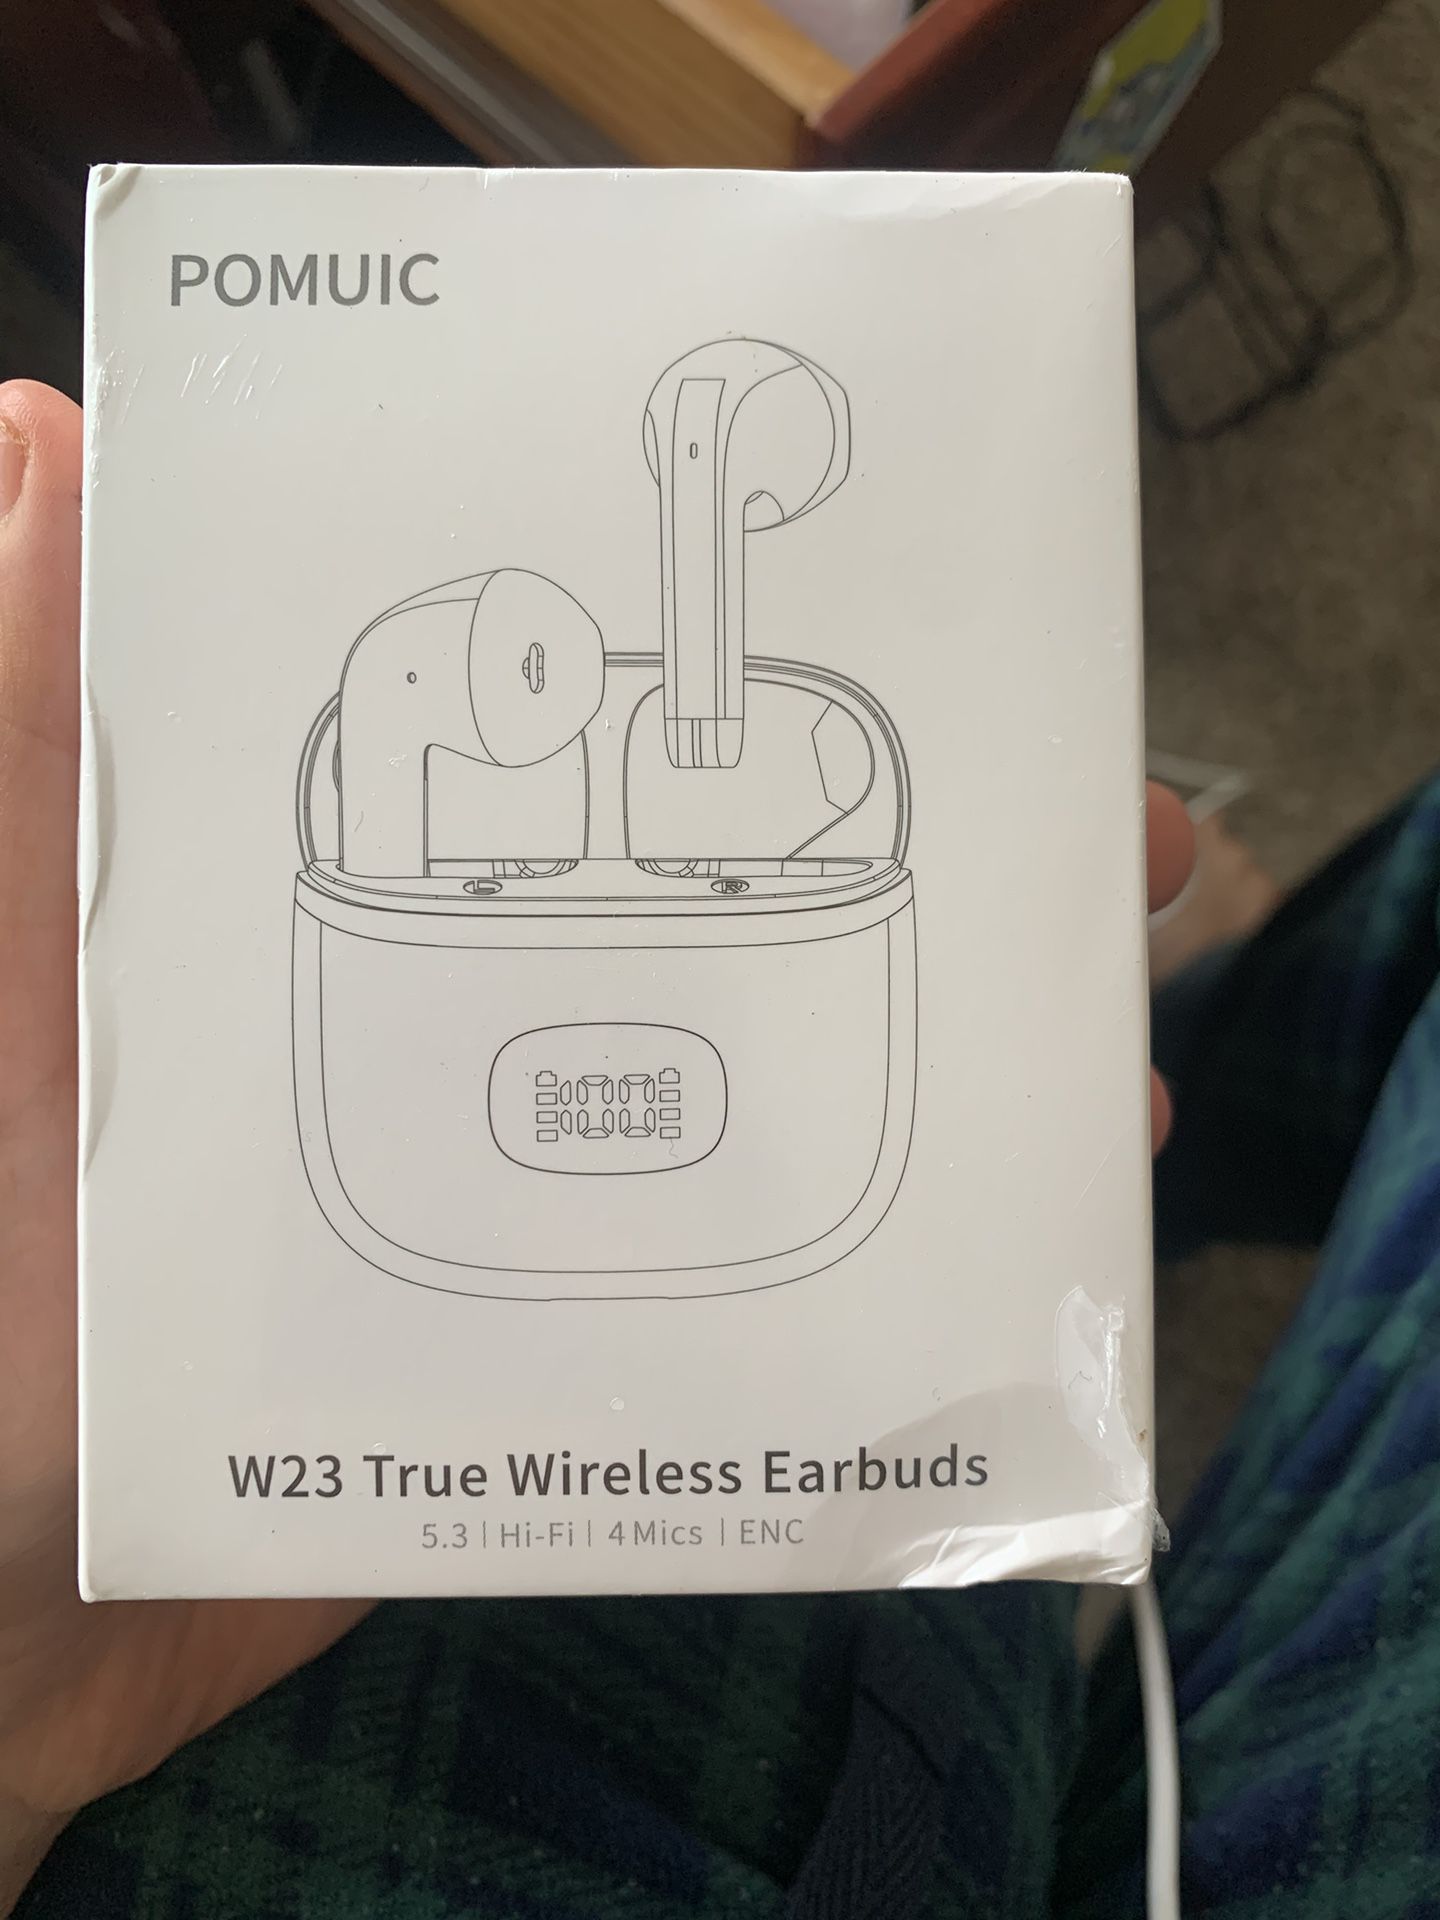 W23 True Wireless Earbuds